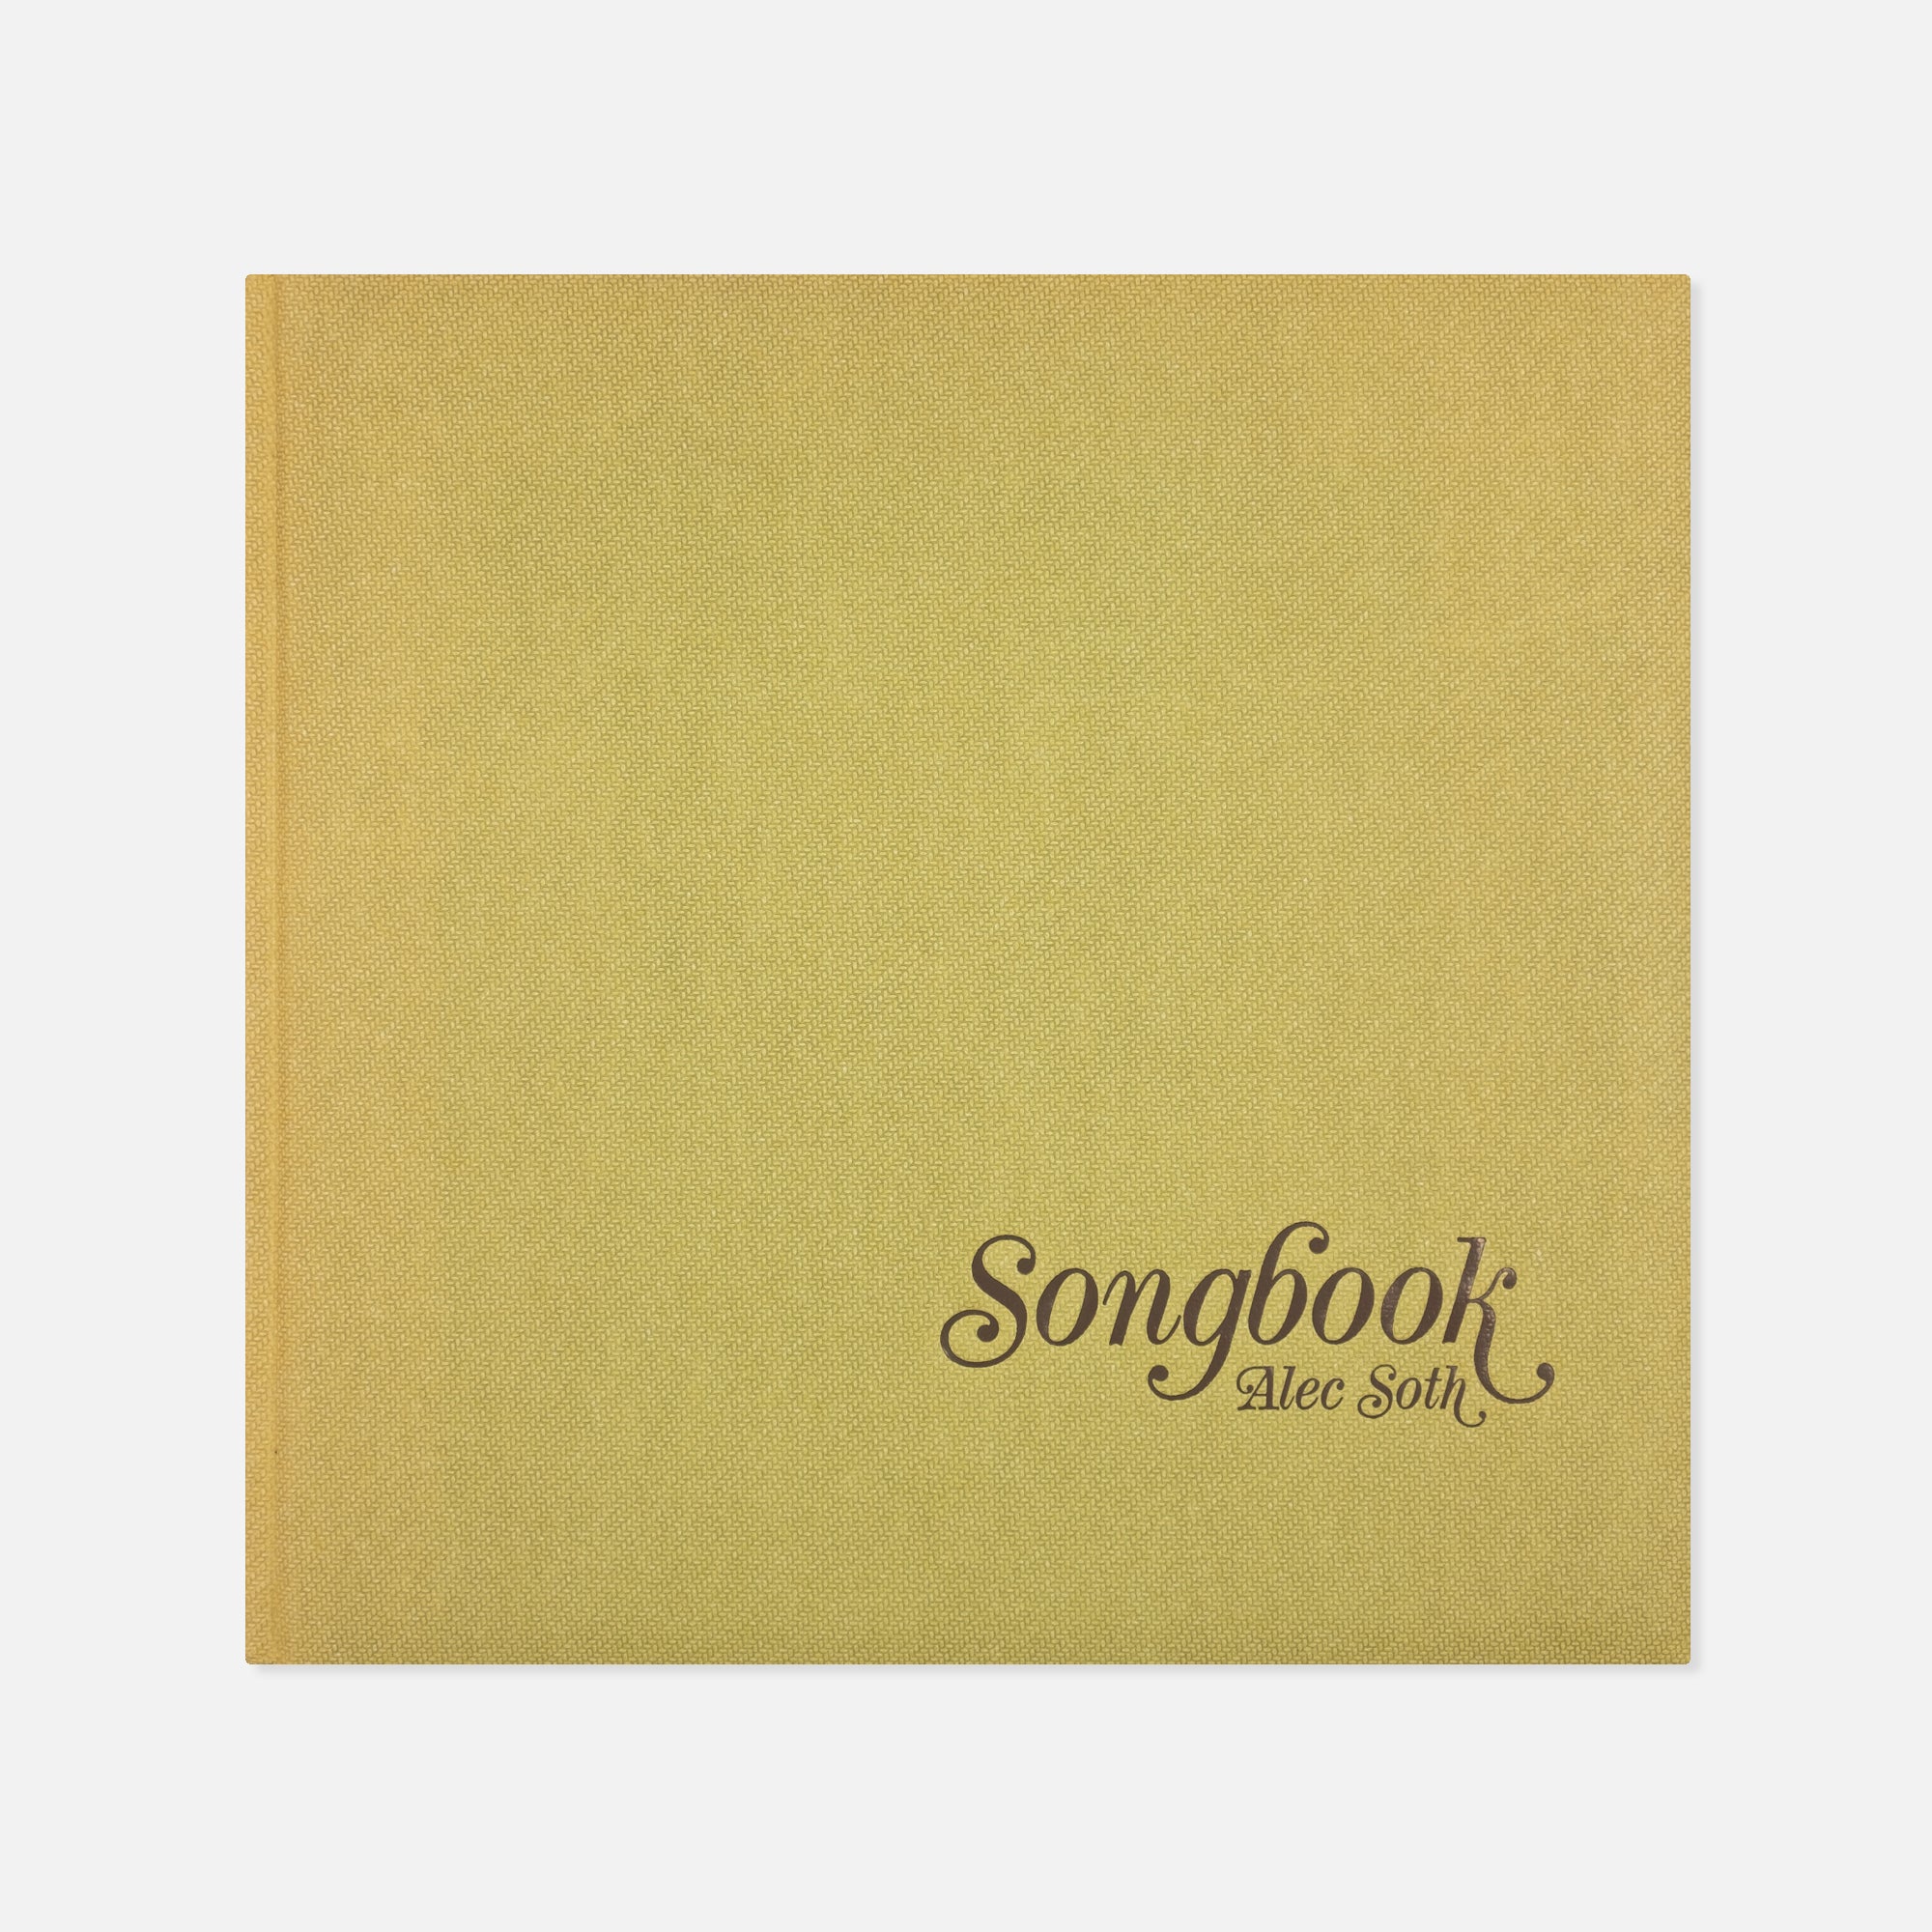 Alec Soth — Songbook